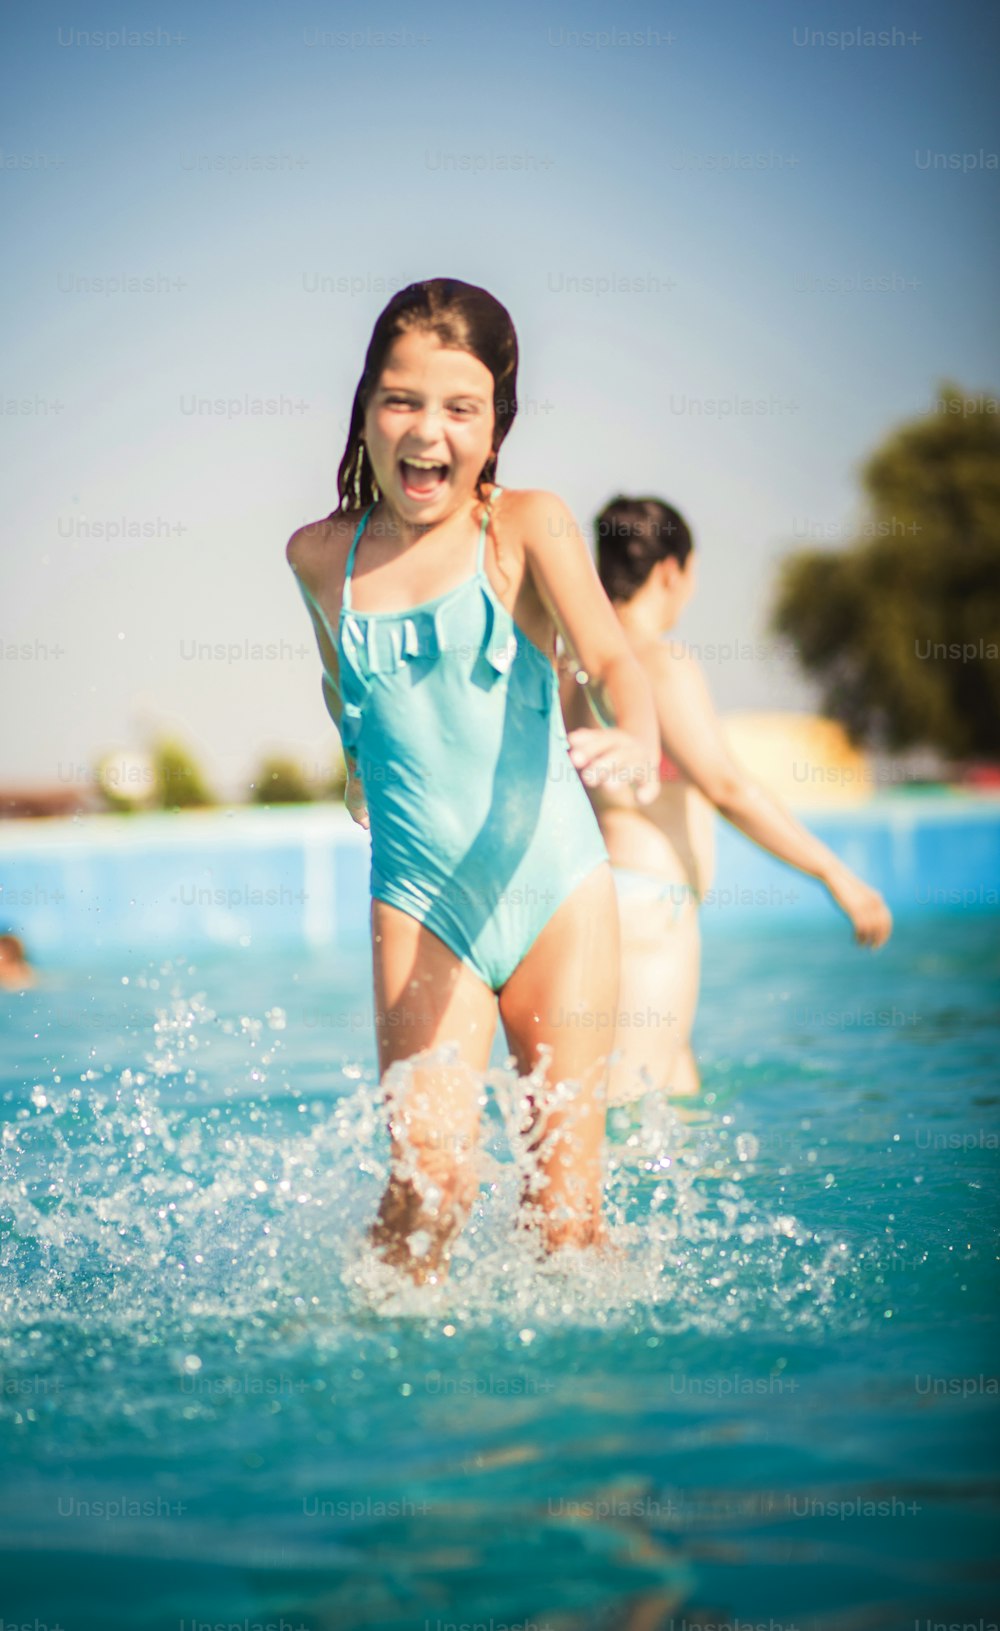 Perfectly fun. Child in the pool.